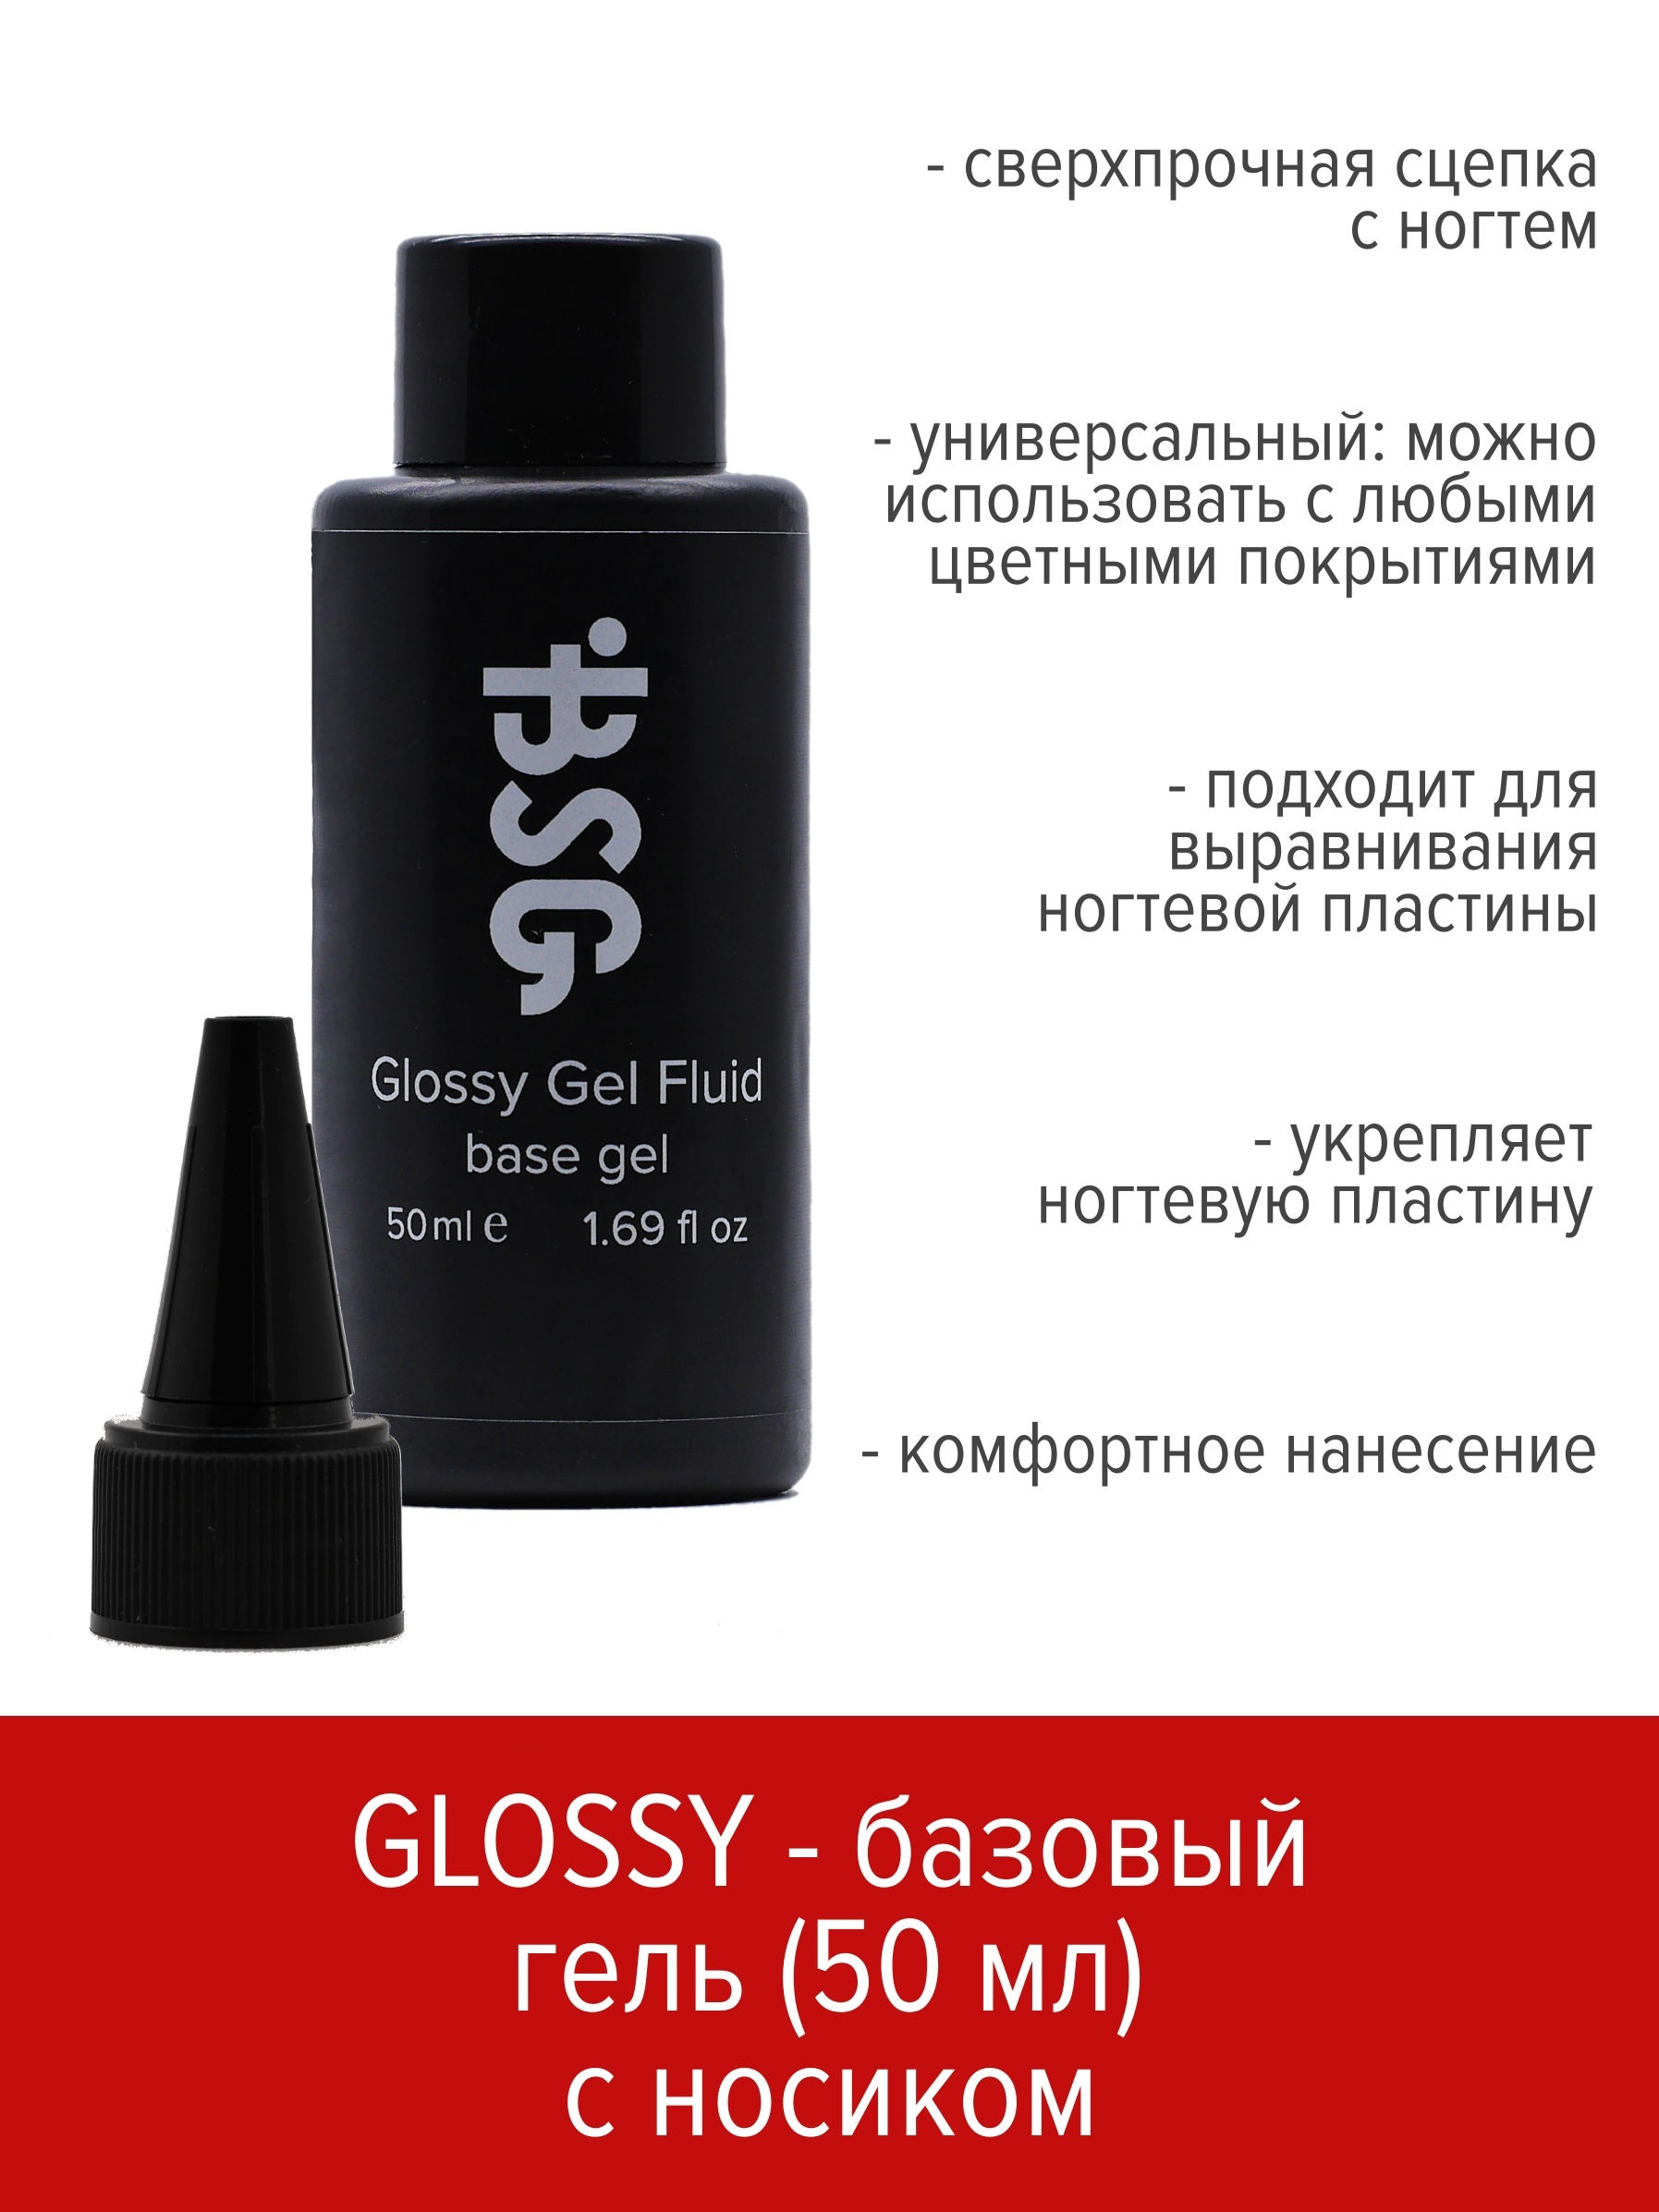 Базовый универсальный гель BSG Glossy gel fluid 50 мл 5шт sim карта извлечение инструмент универсальный достаточно длинный портативный для планшета